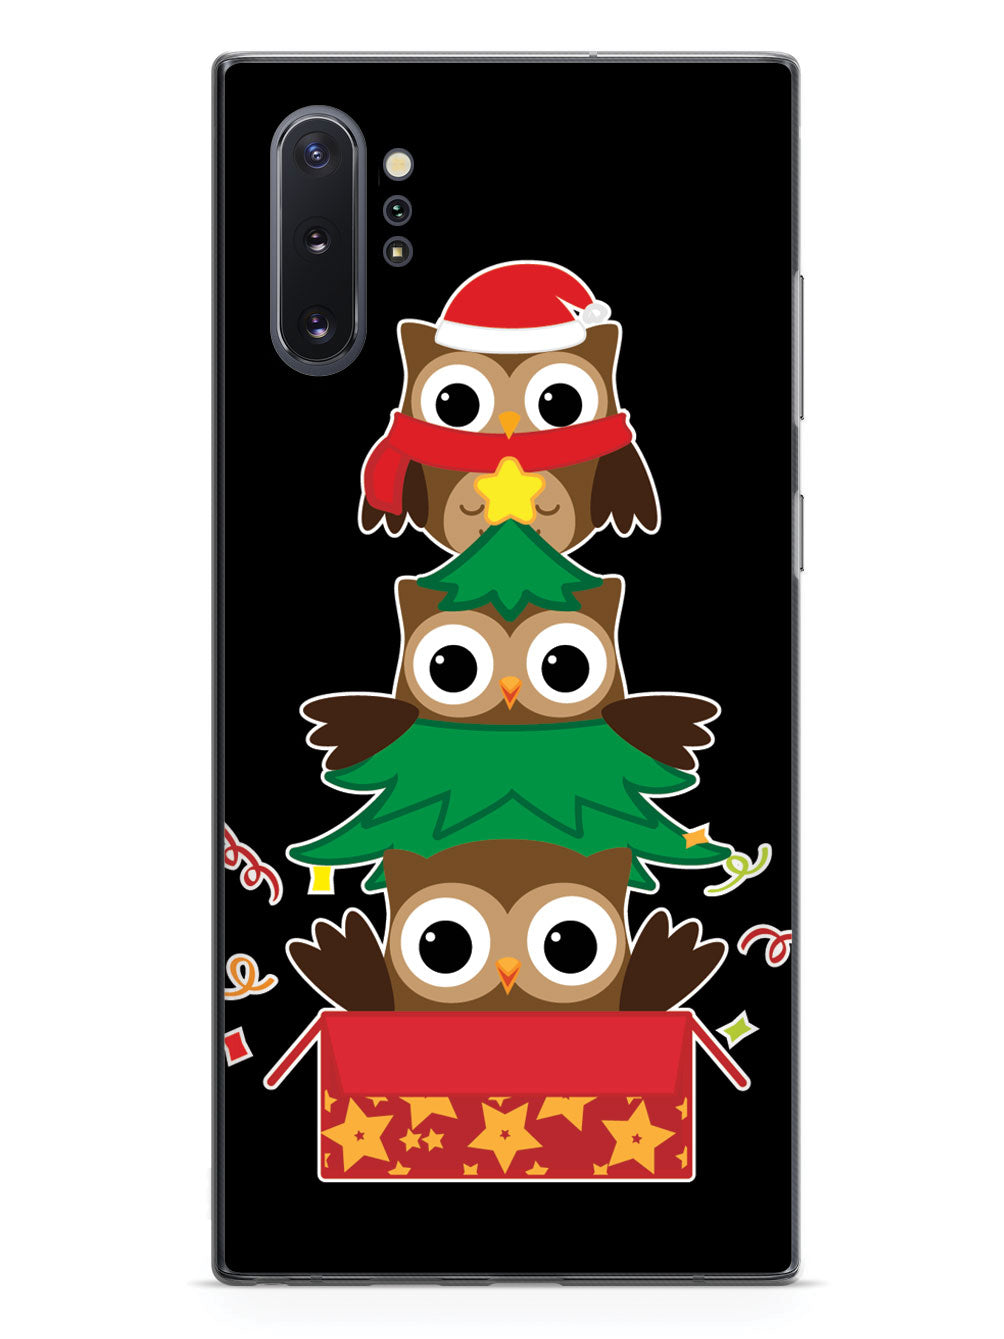 Christmas Owls Trio - Black Case